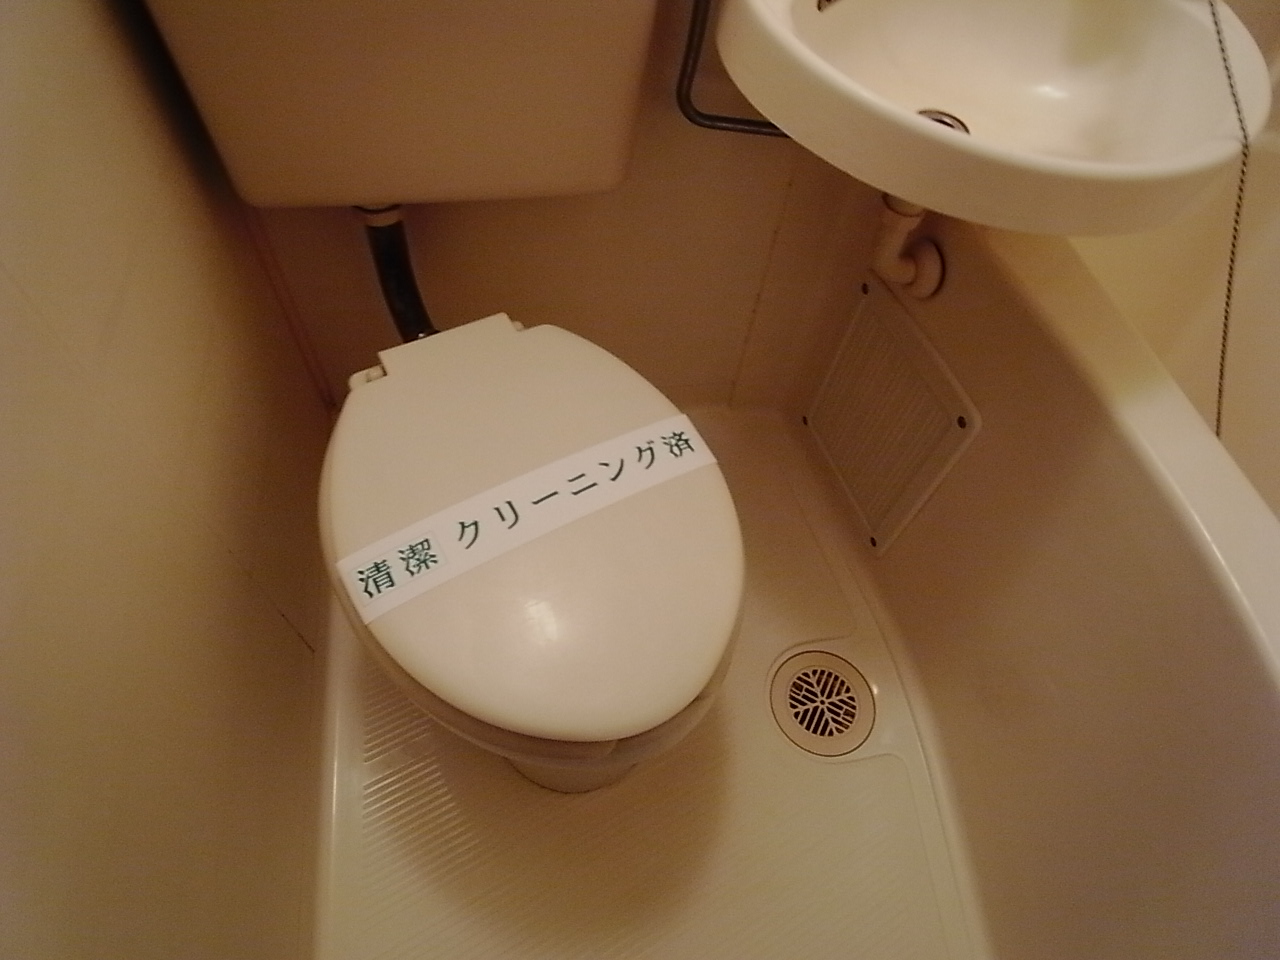 Toilet. Toilet bath